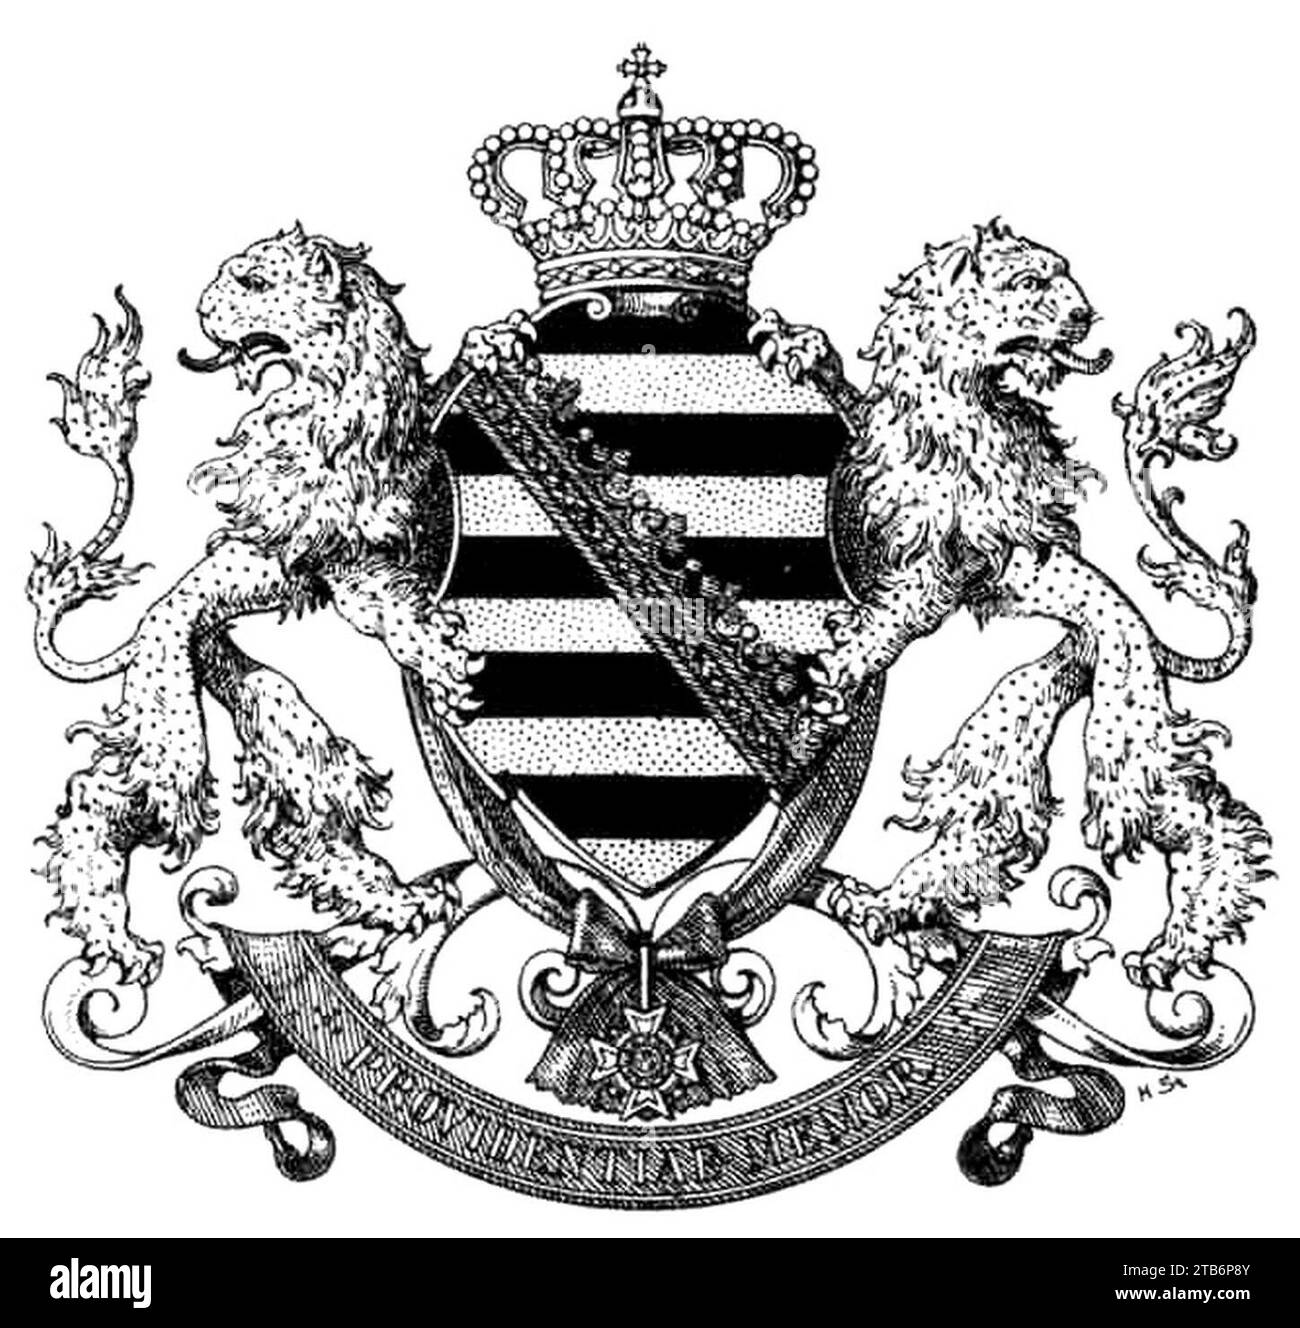 Wappen Deutsches Reich - Königreich Sachsen. Stock Photo